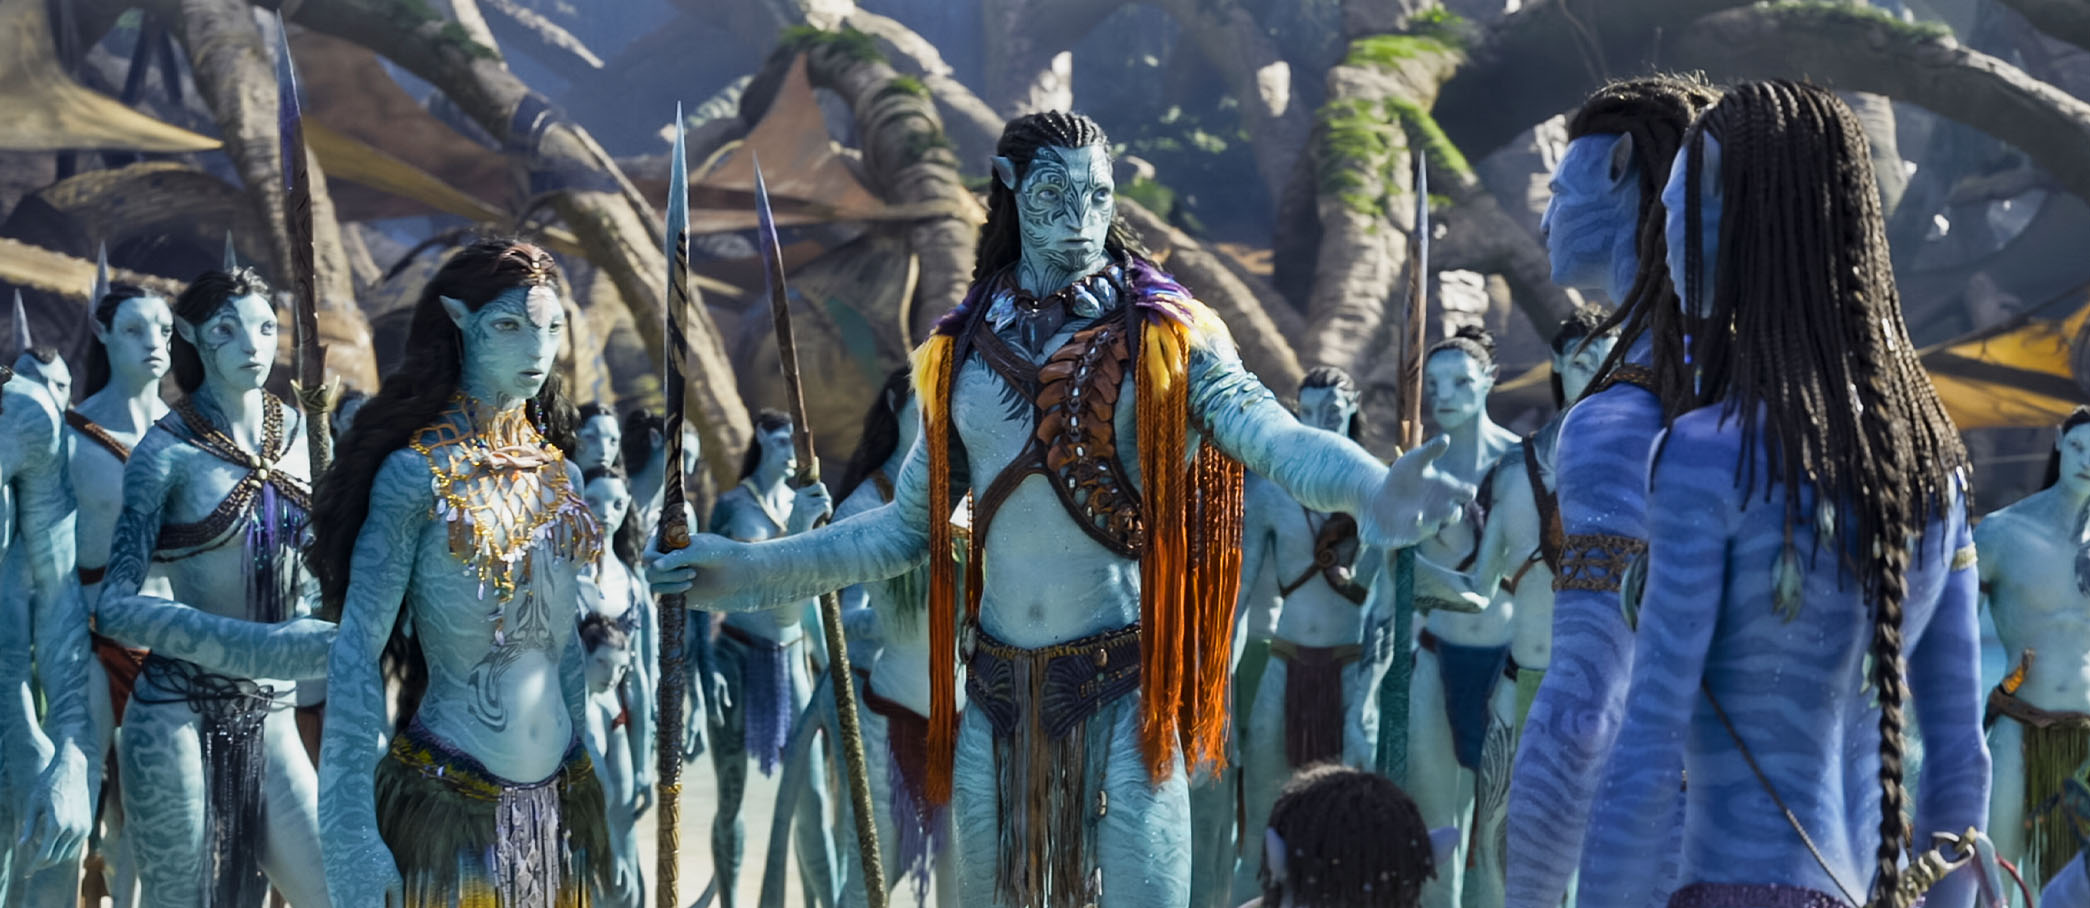 Hình ảnh độc quyền được đăng tải mới đây hé lộ cái nhìn rõ nét hơn về nhân và Tonowari trong Avatar: The Way of Water. Ảnh: Empire